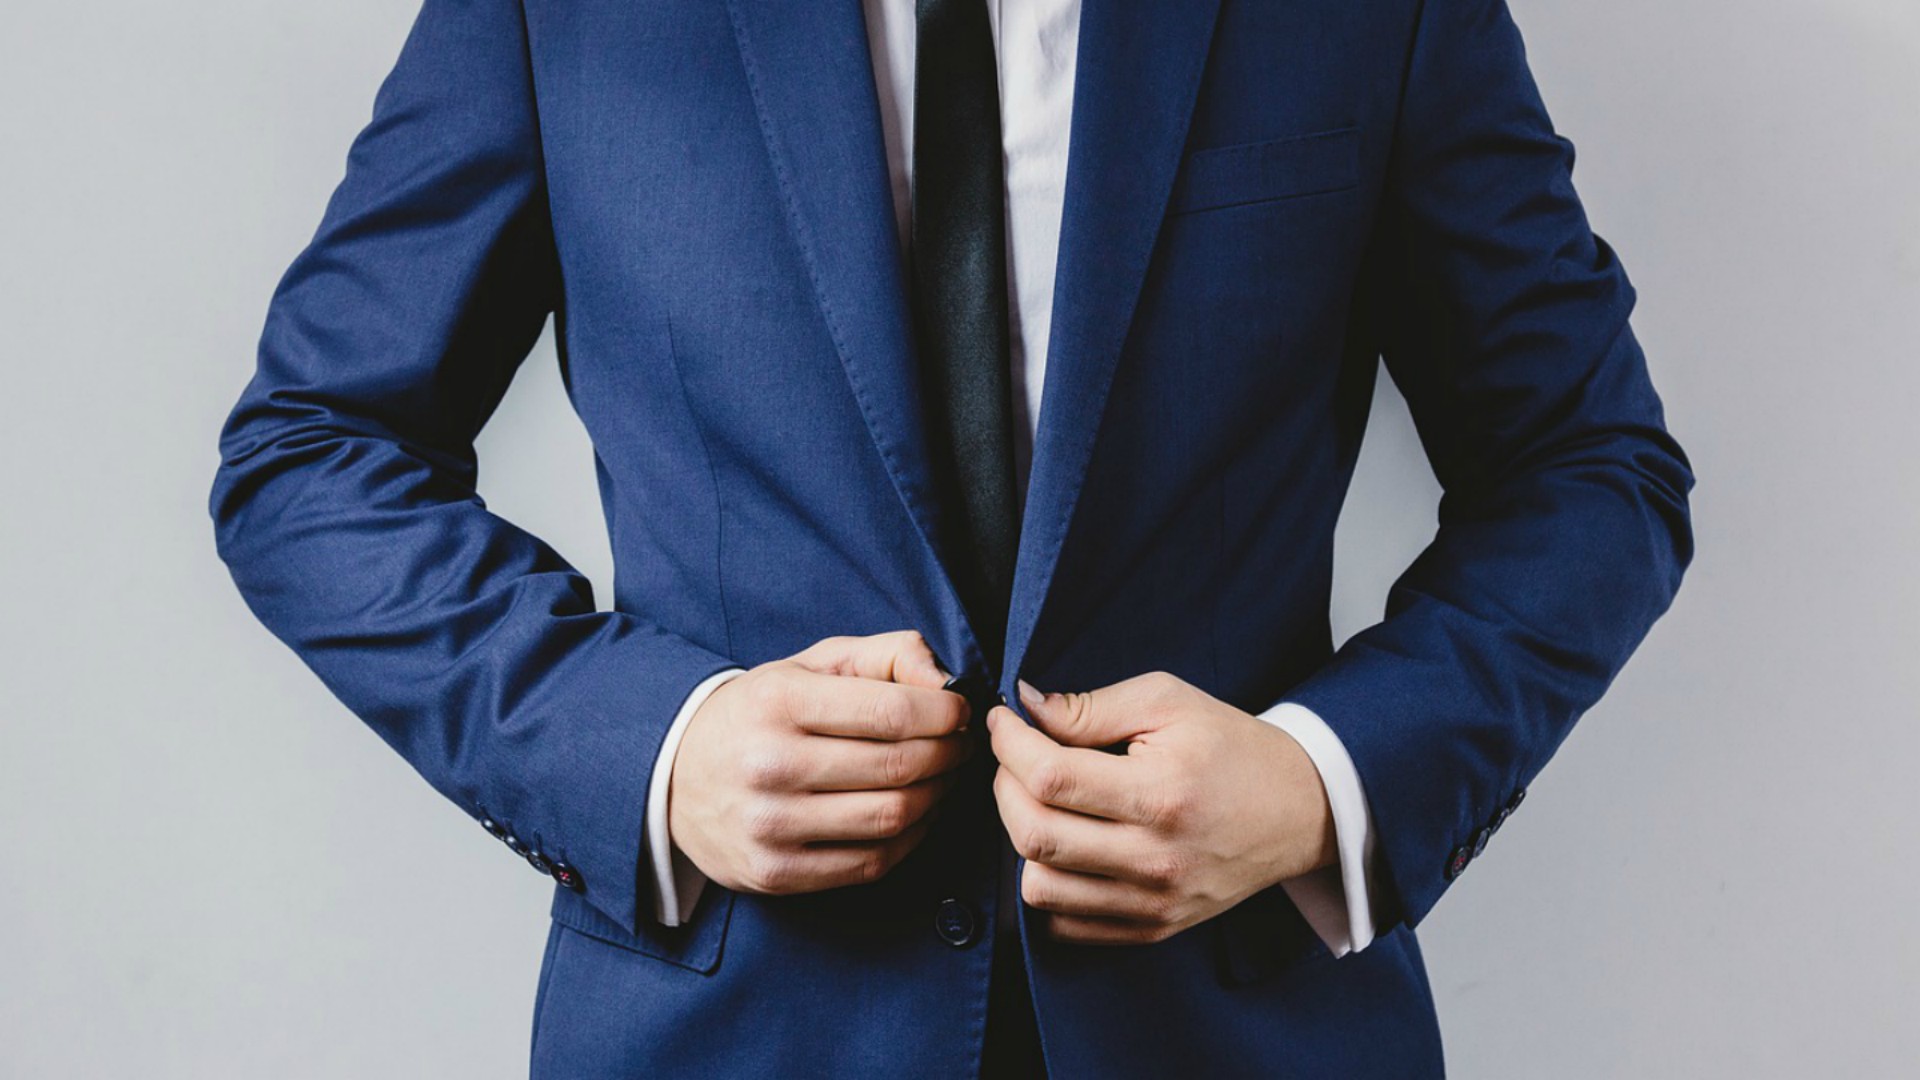 Cómo vestir elegante: guía de estilo para hombres con clase